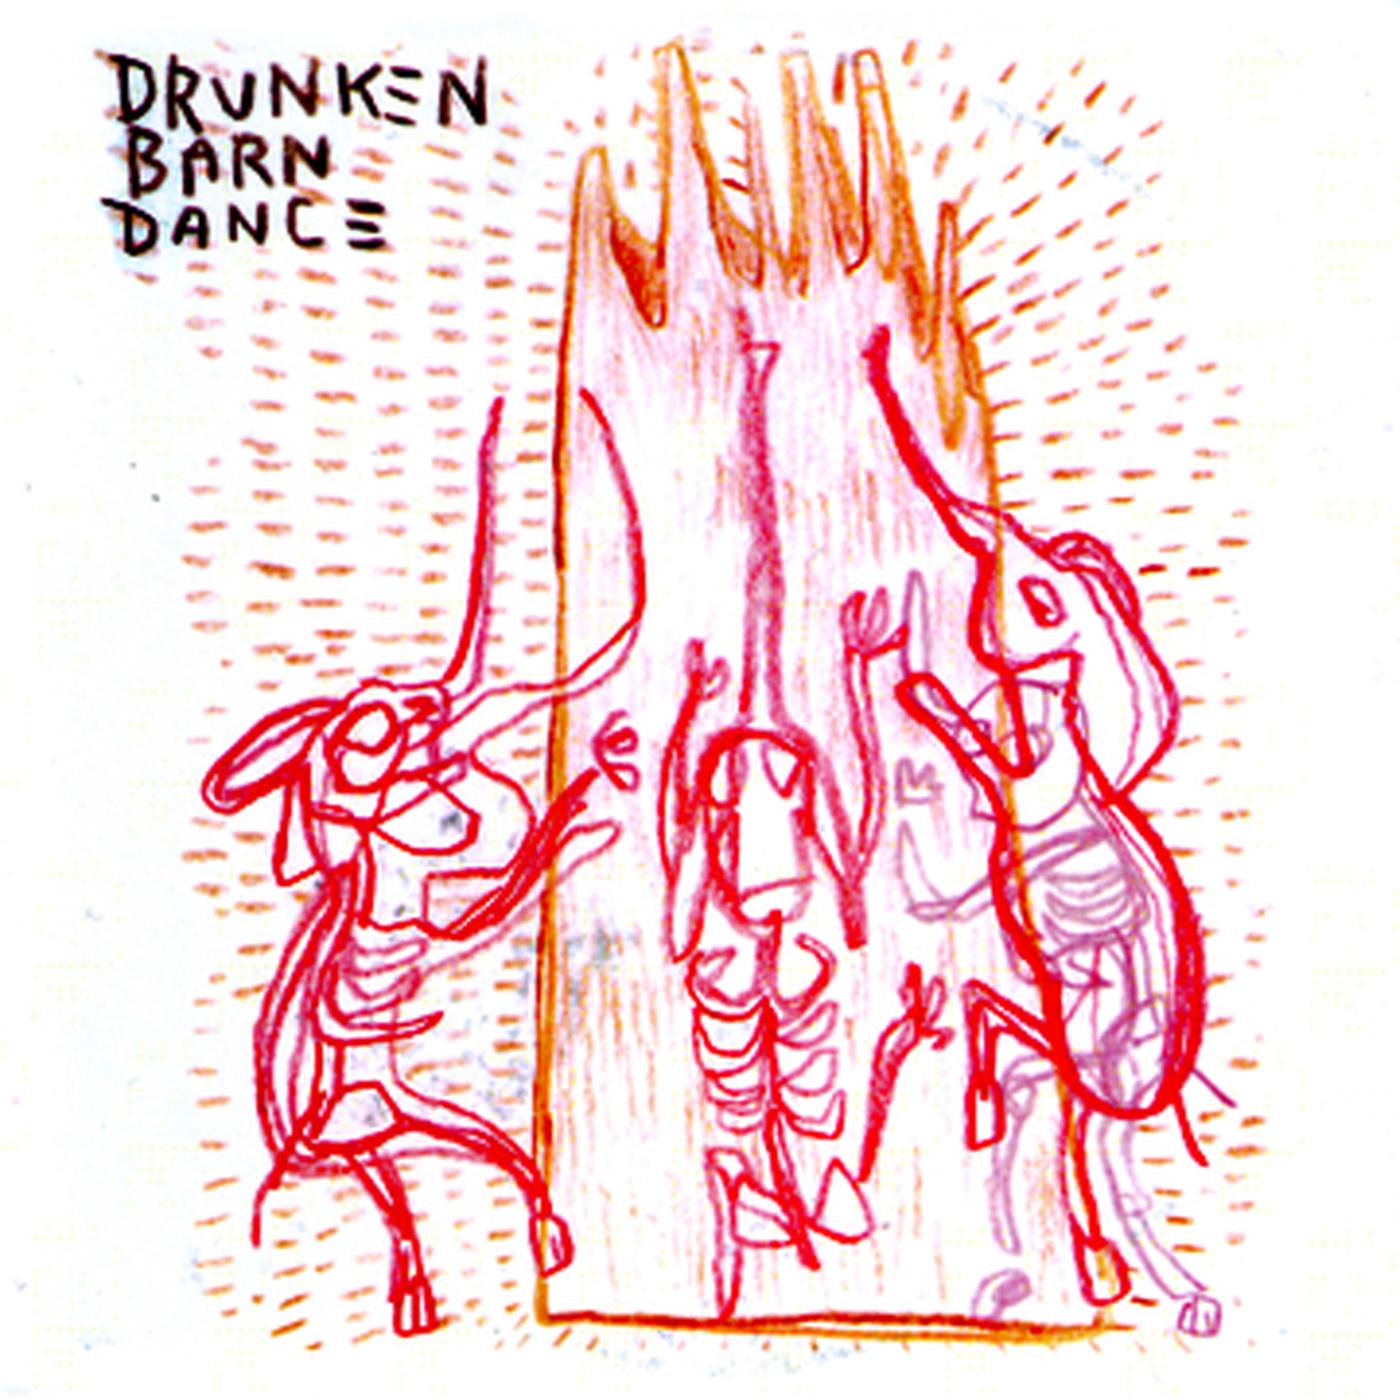 Drunken Barn Dance